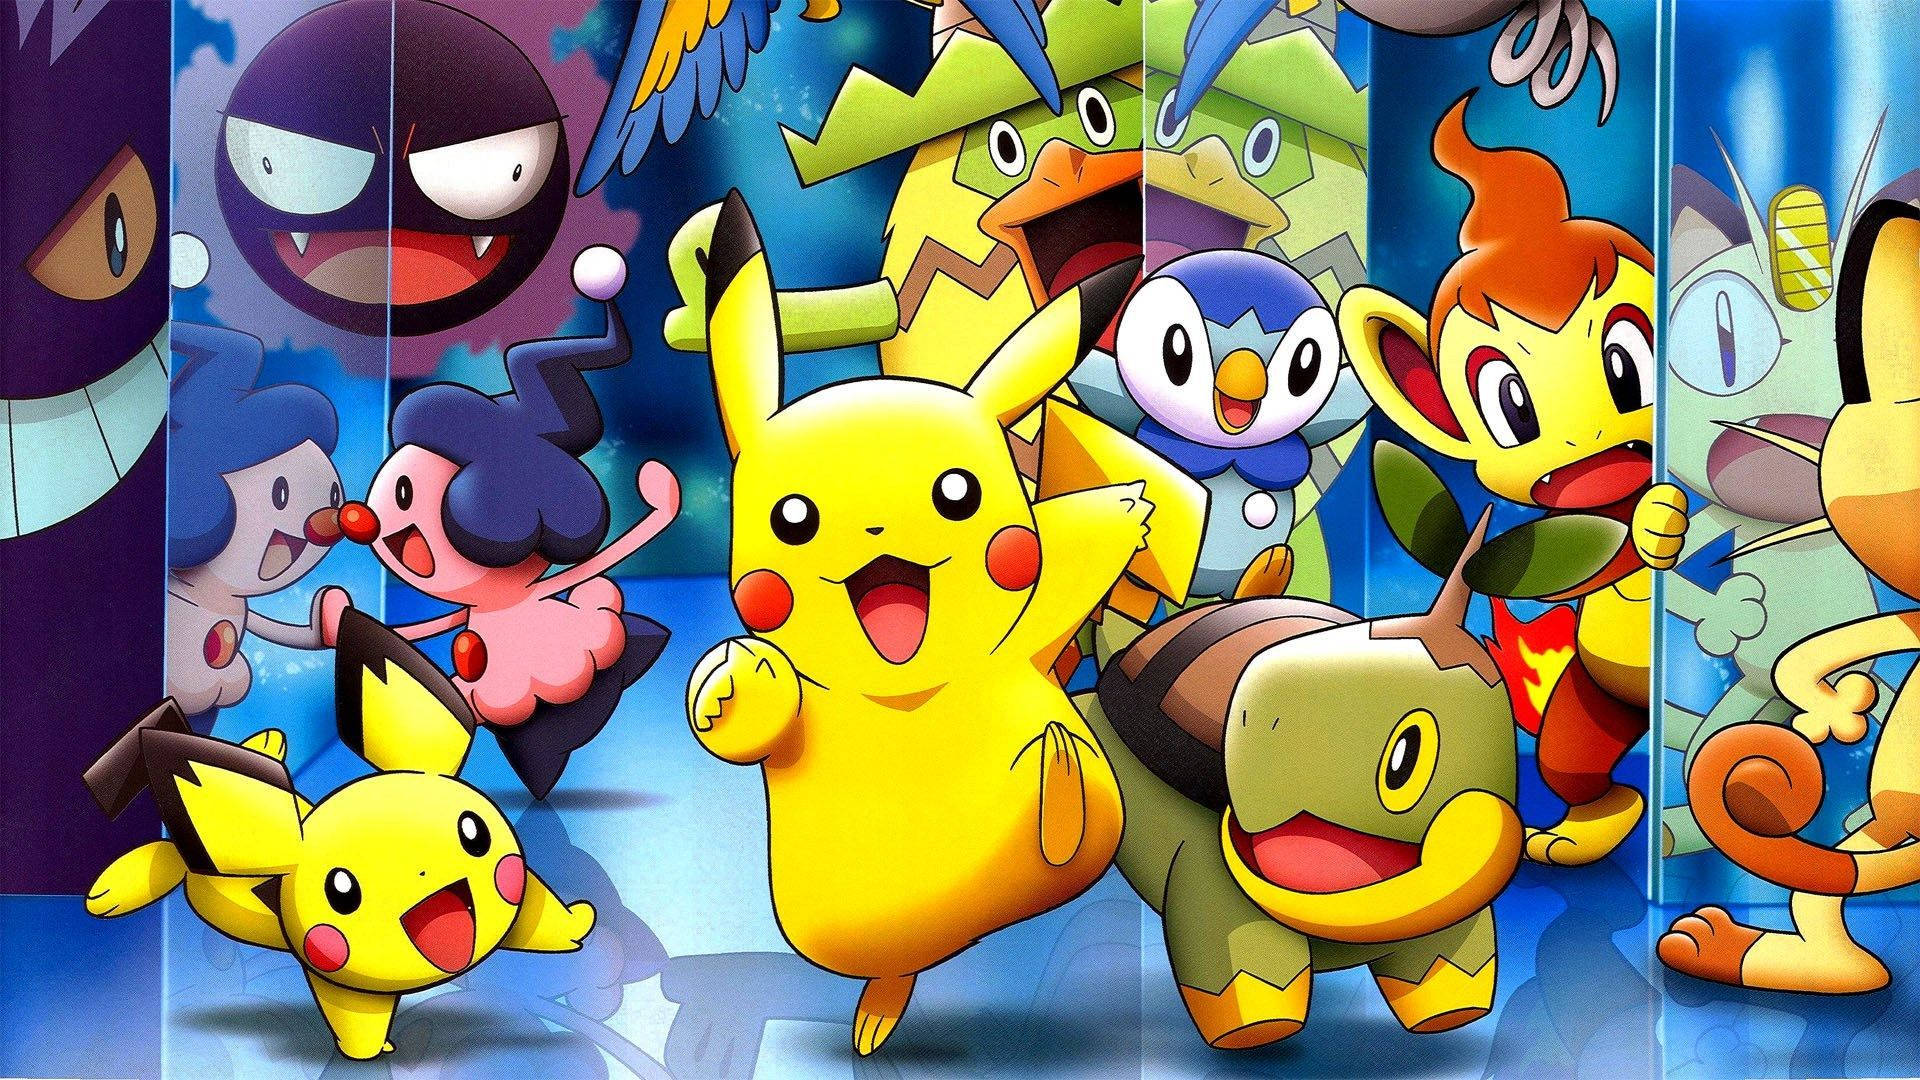 Pikachu With Pokemon Friends